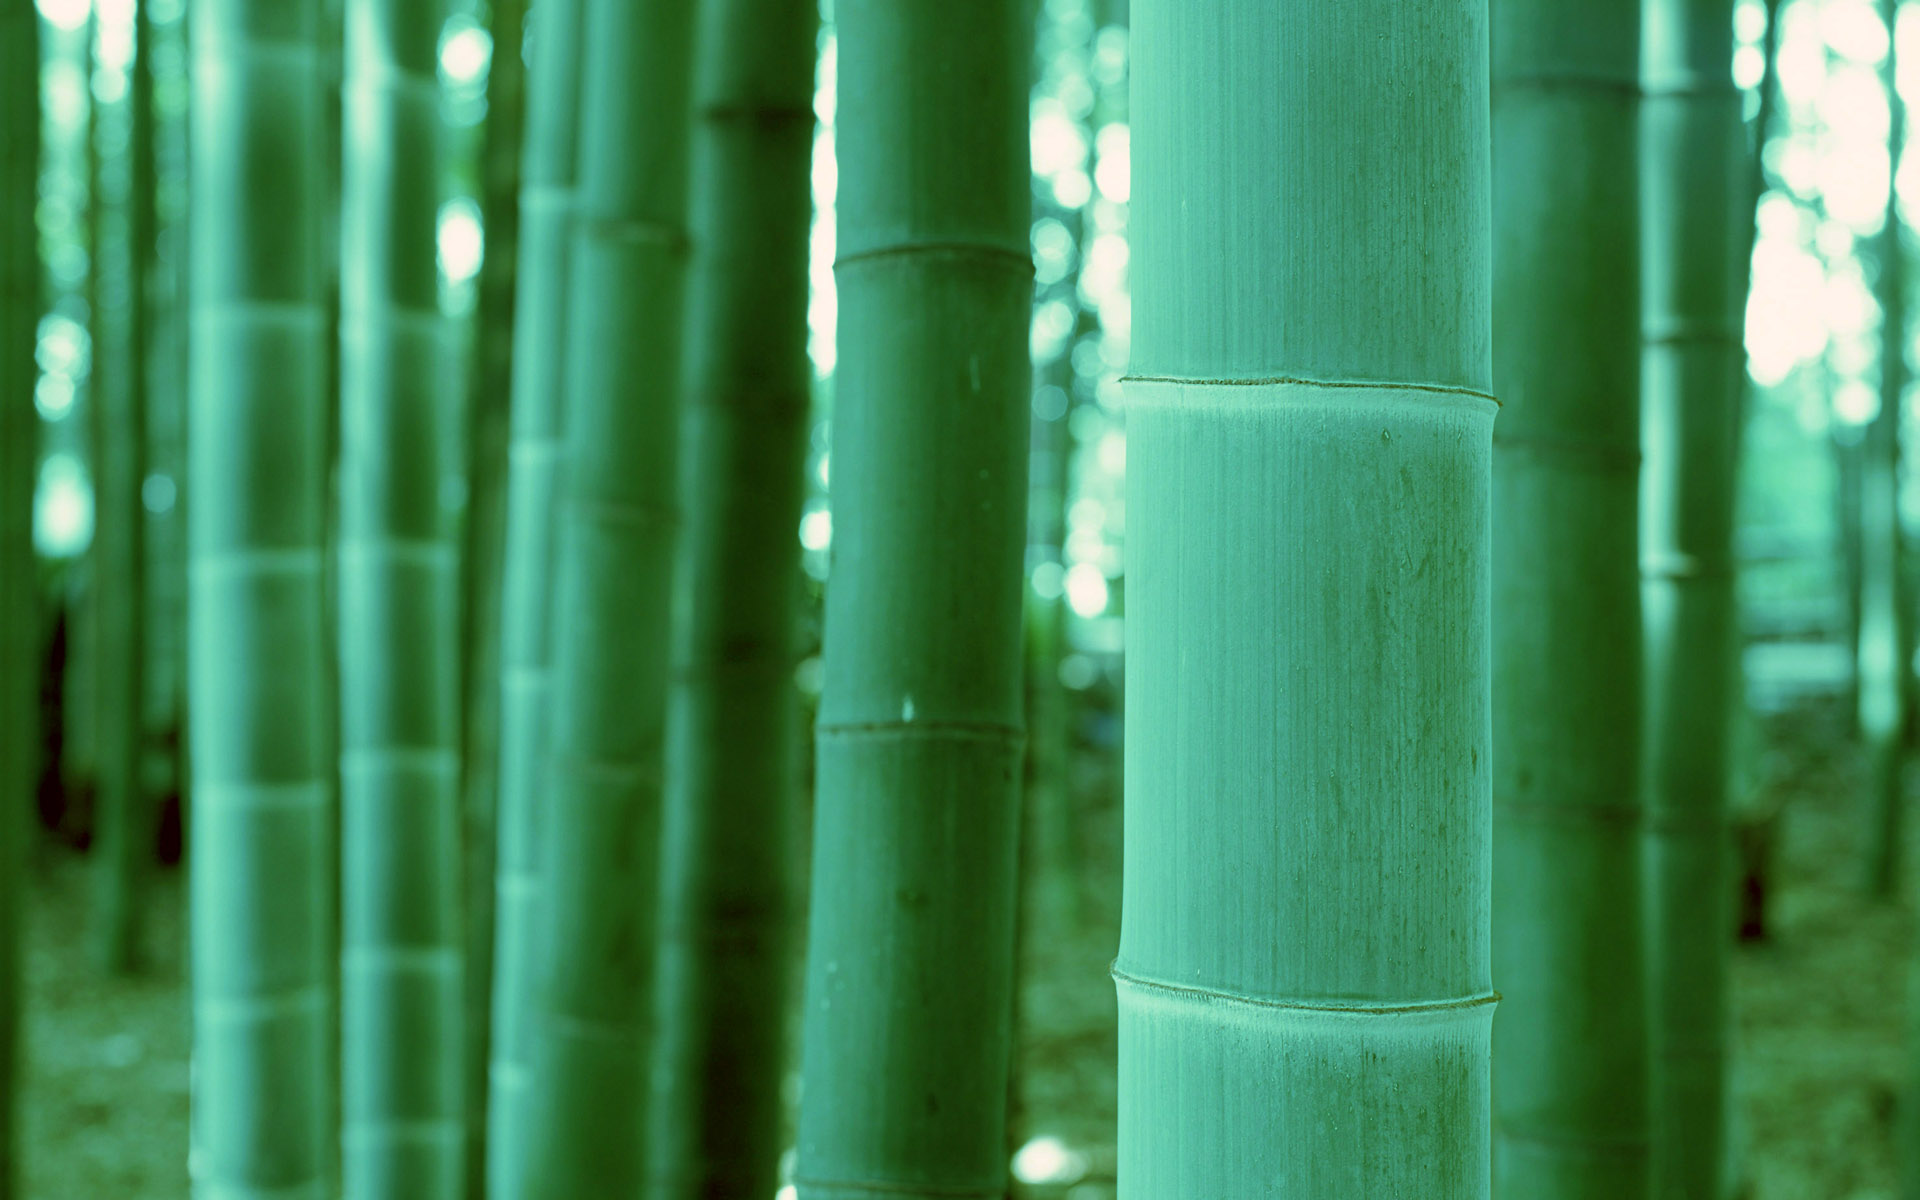 Earth Bamboo 1920x1200